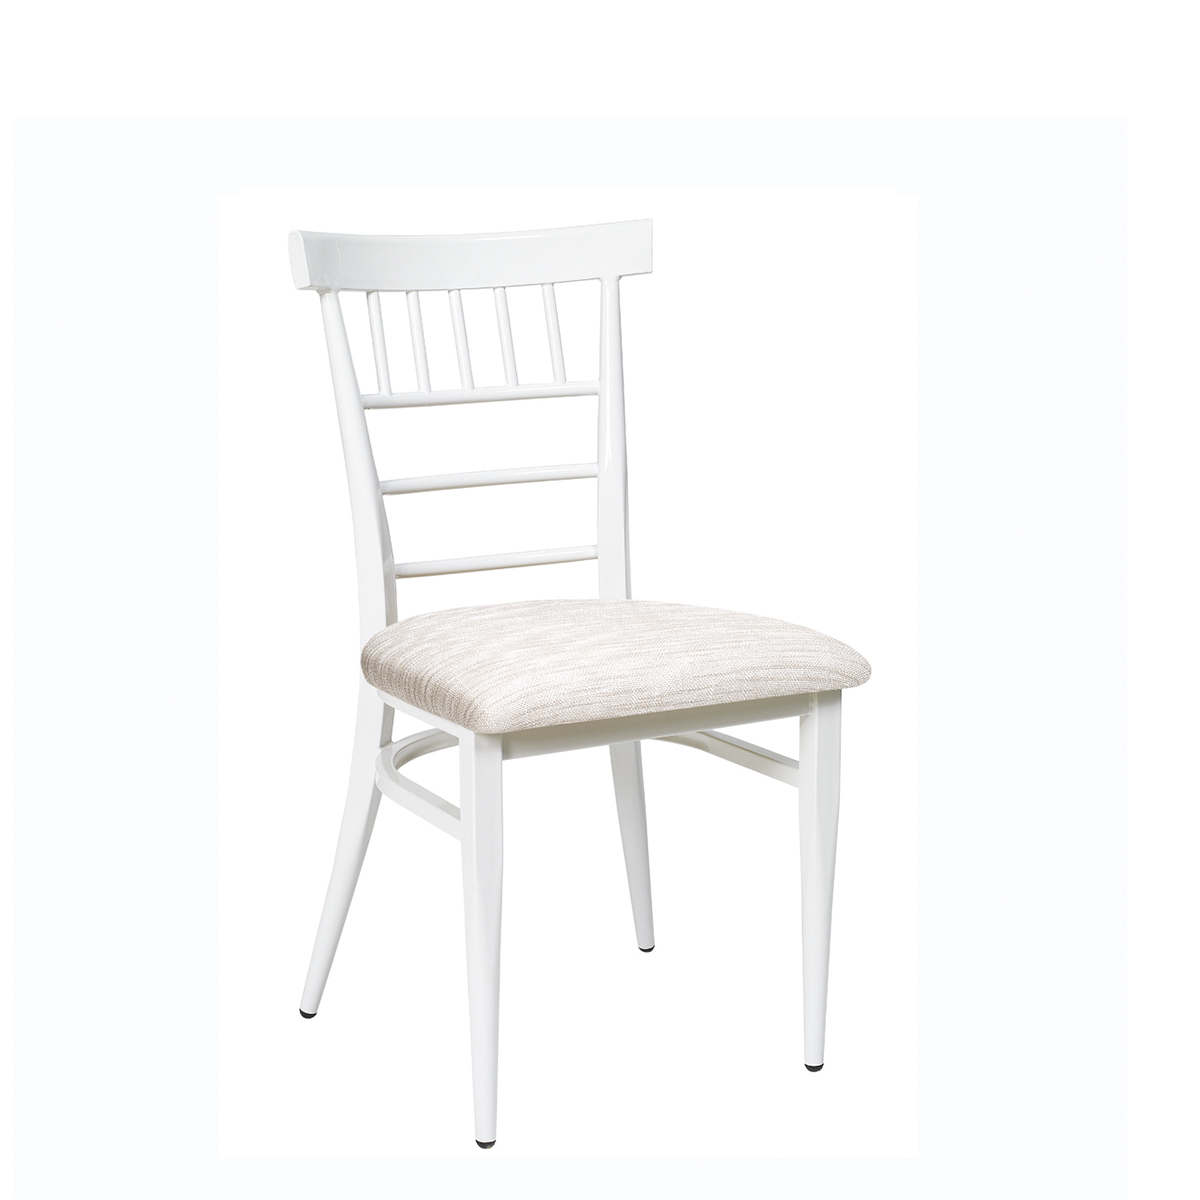 silla nevada blanca con asiento tapizado